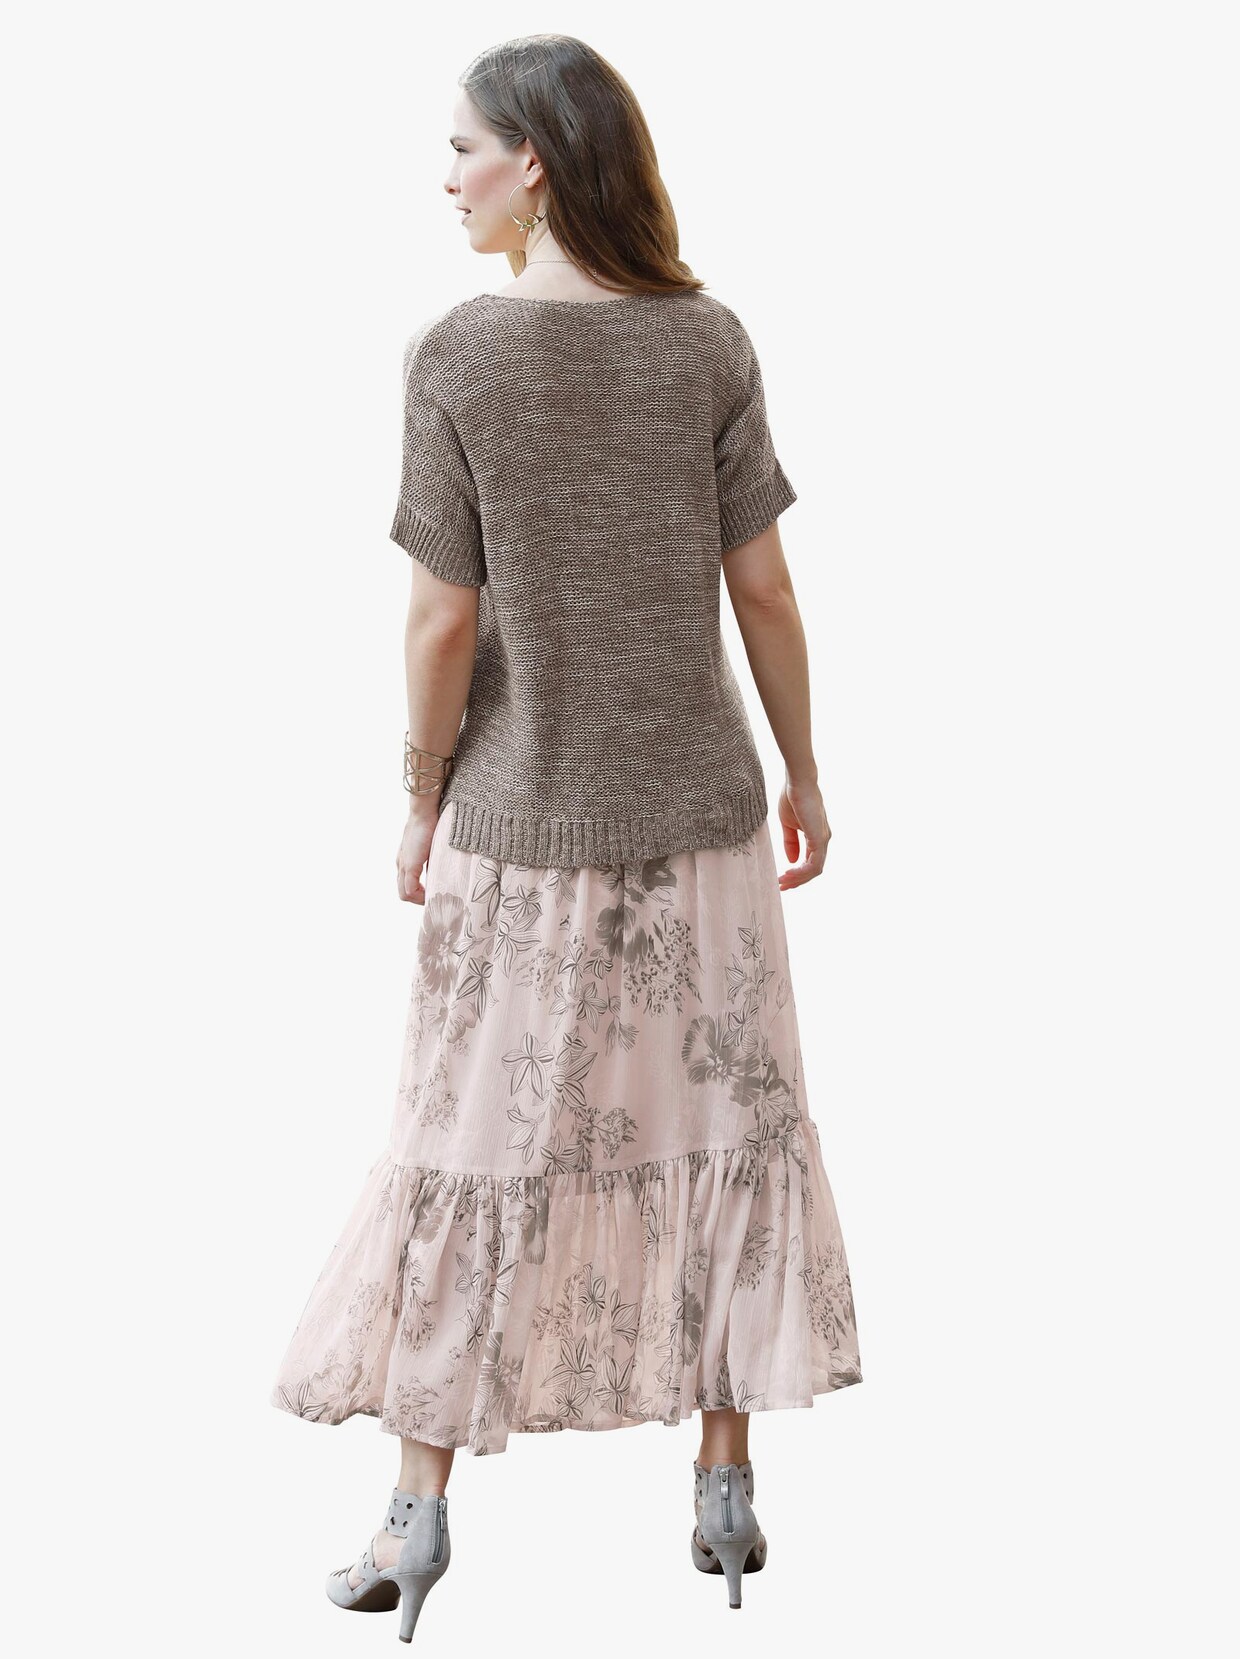 Volánová sukňa - Hnedosivý vzor